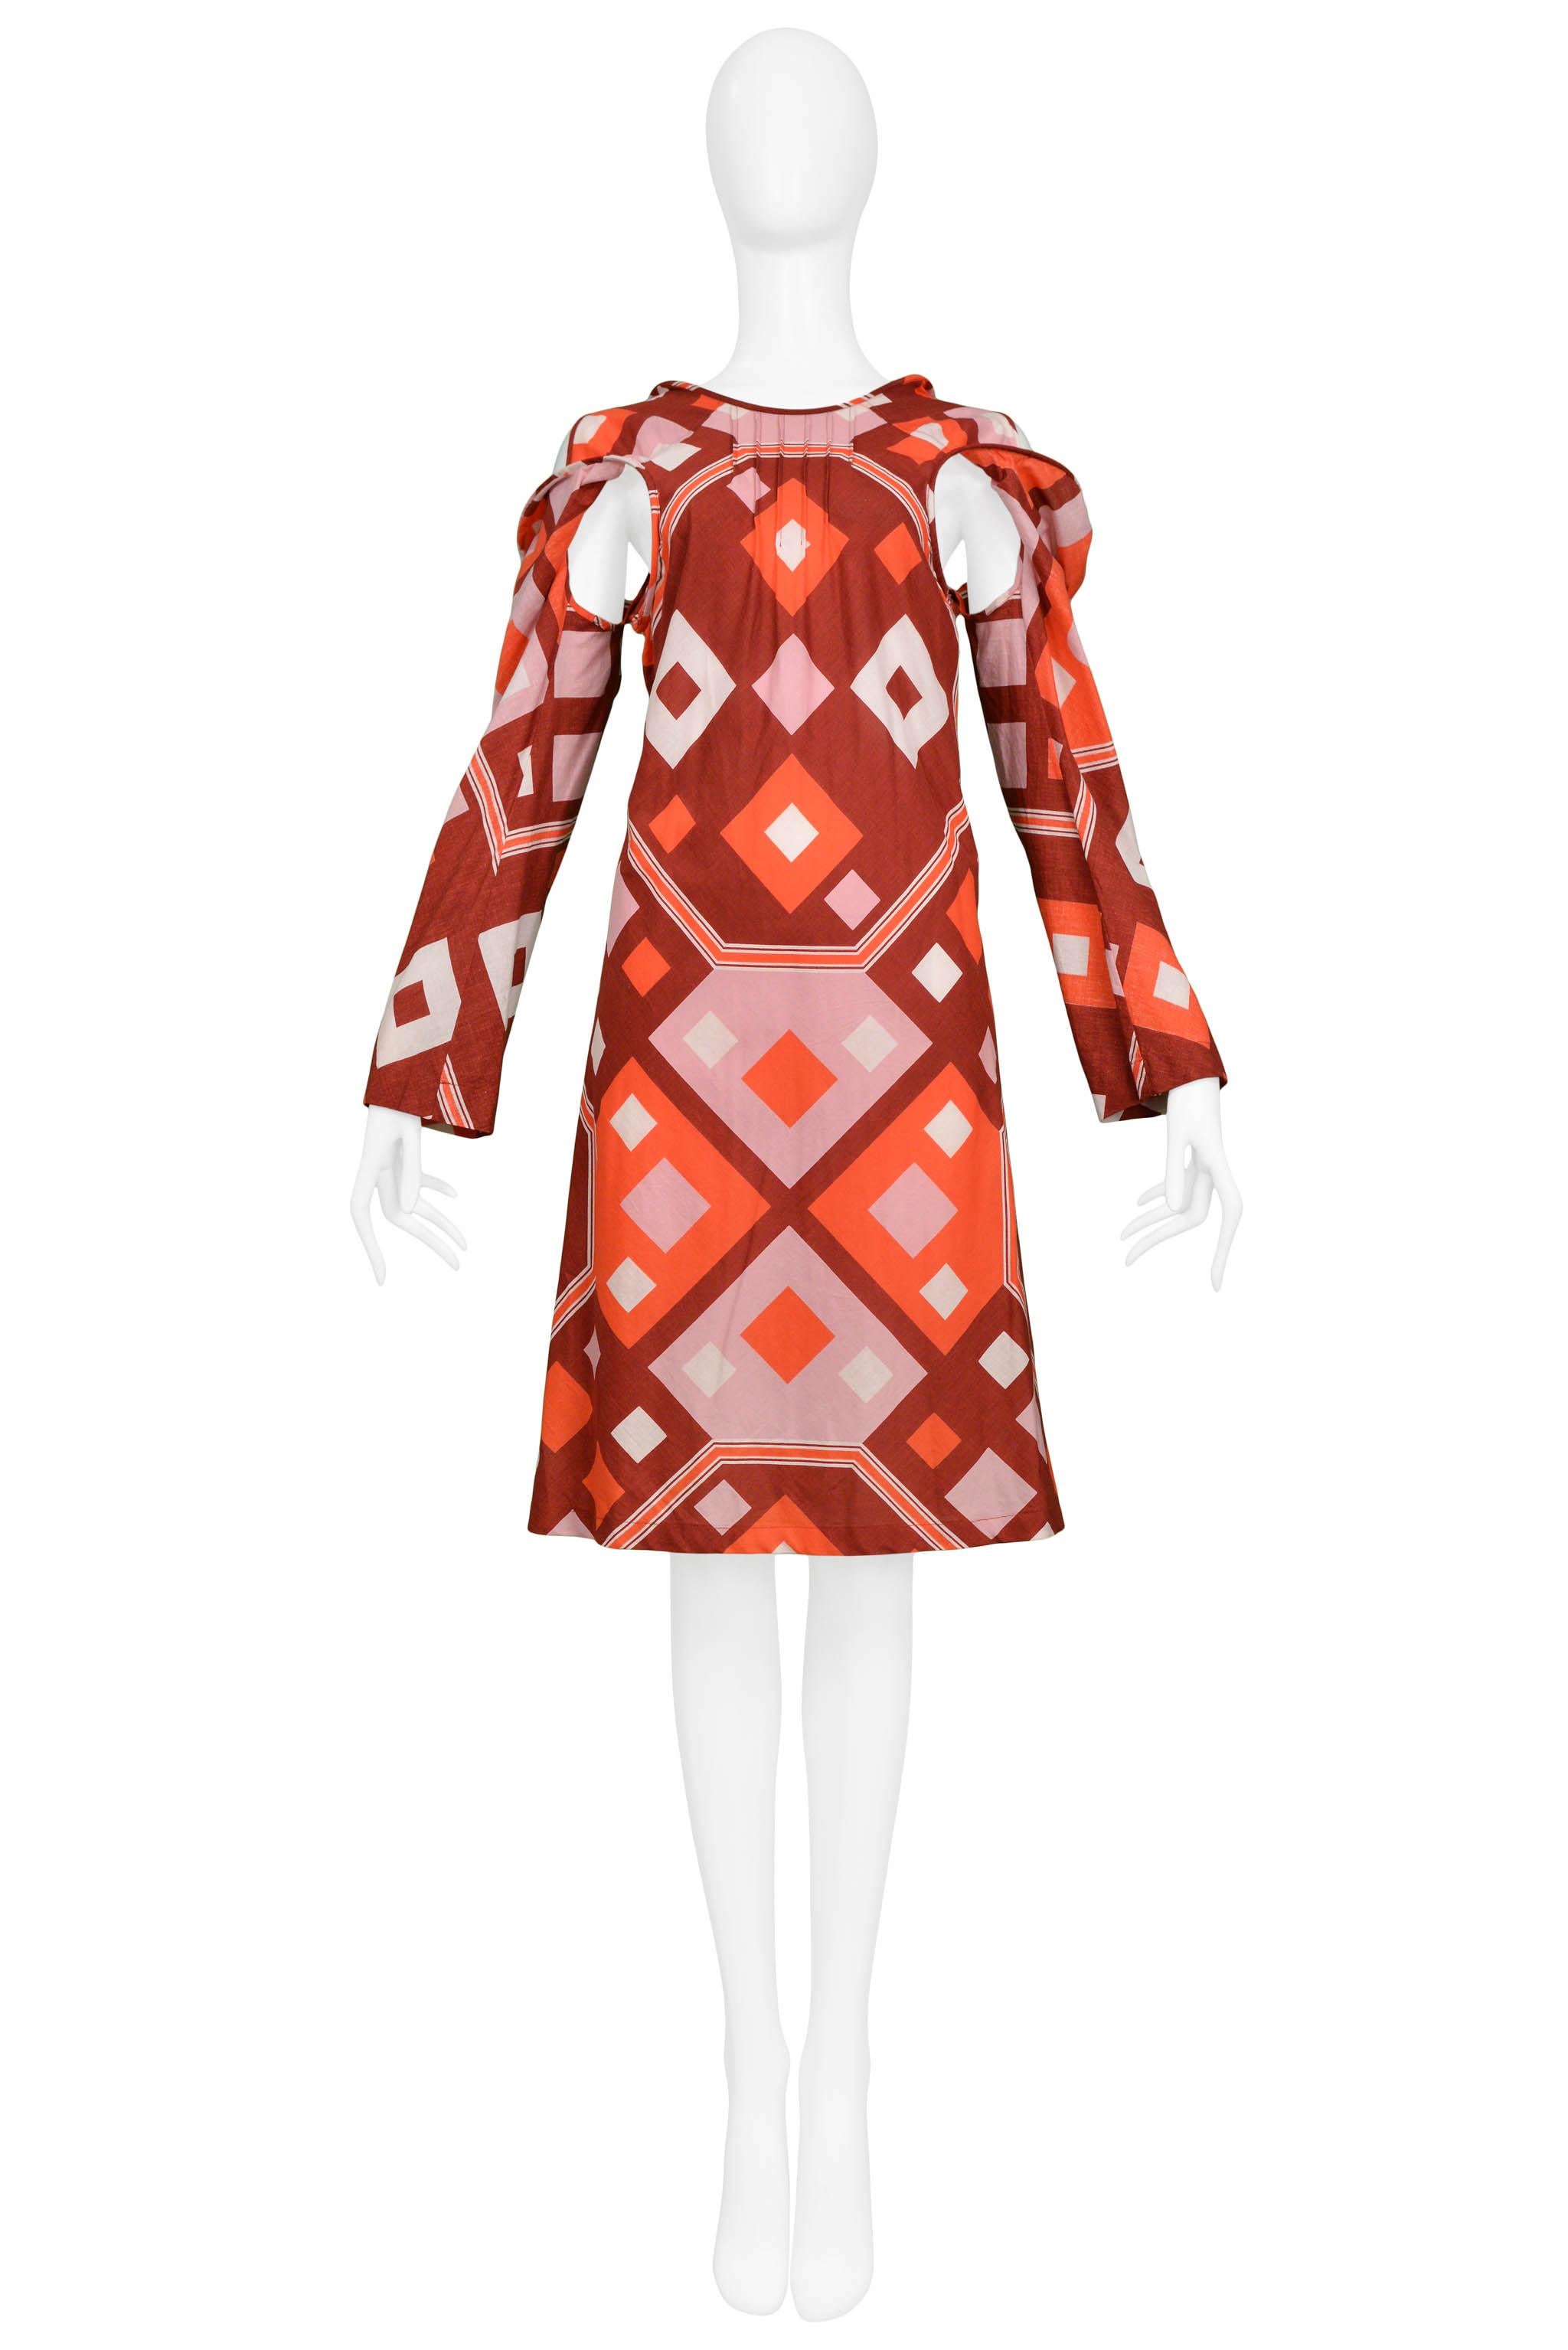 Resurrection Vintage a le plaisir de vous proposer une robe de jour vintage Junya Watanabe for Comme des Garcons en coton rose, rouge et orange avec un imprimé déco, des découpes sous les bras et des manches longues. Collection SS 2003.

Junya